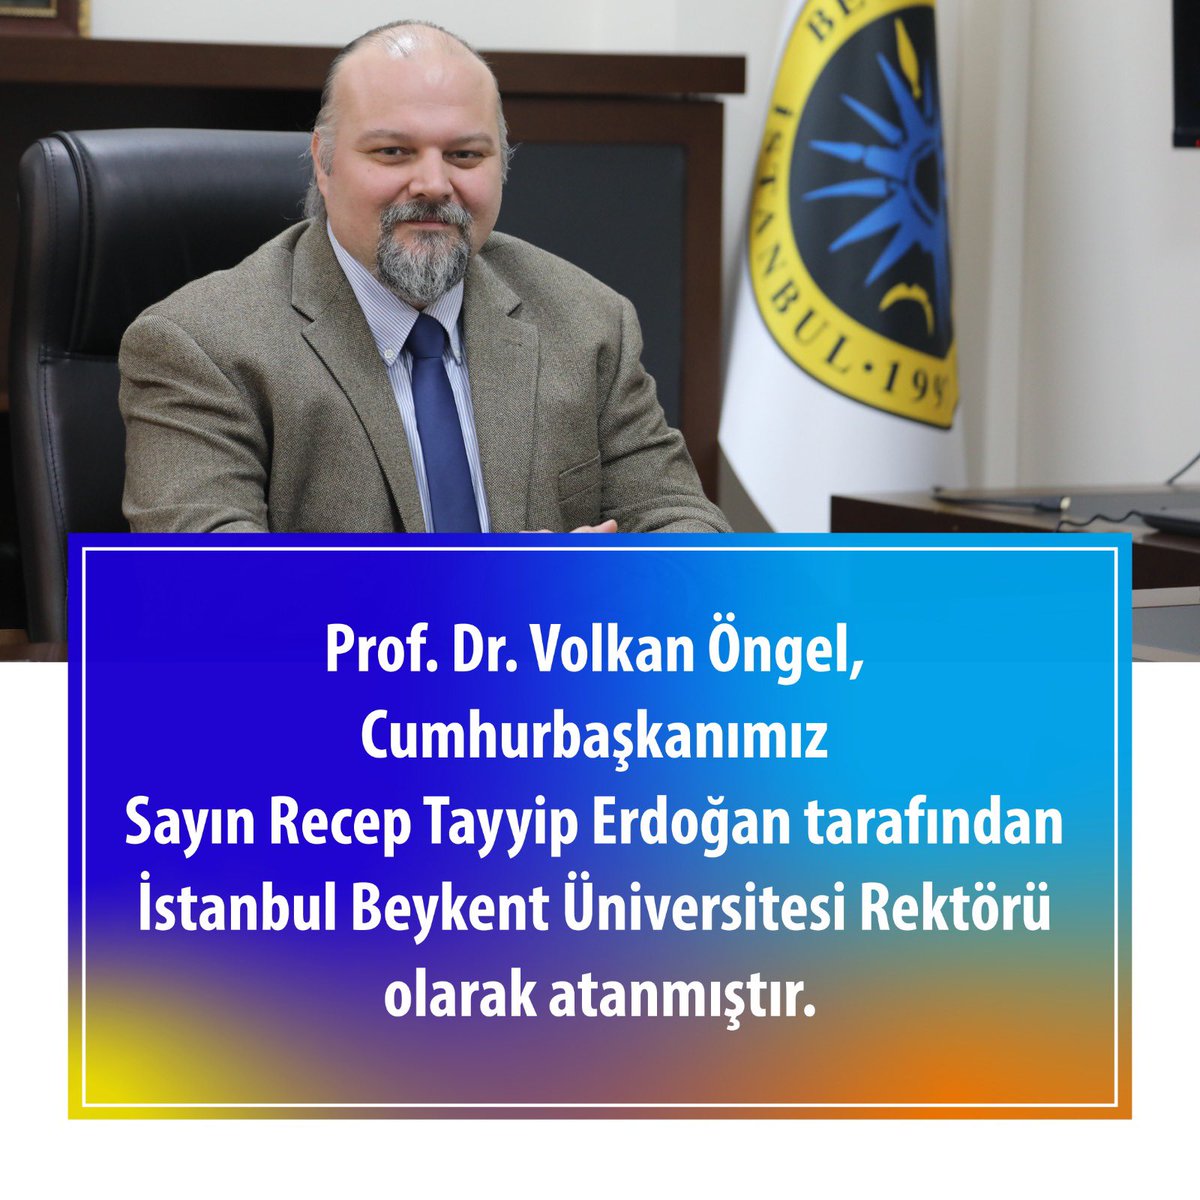 Prof. Dr. Volkan Öngel, Cumhurbaşkanımız Sn. Recep Tayyip Erdoğan tarafından İstanbul Beykent Üniversitesi Rektörü olarak atanmıştır. 

#İstanbulBeykentÜniversitesi